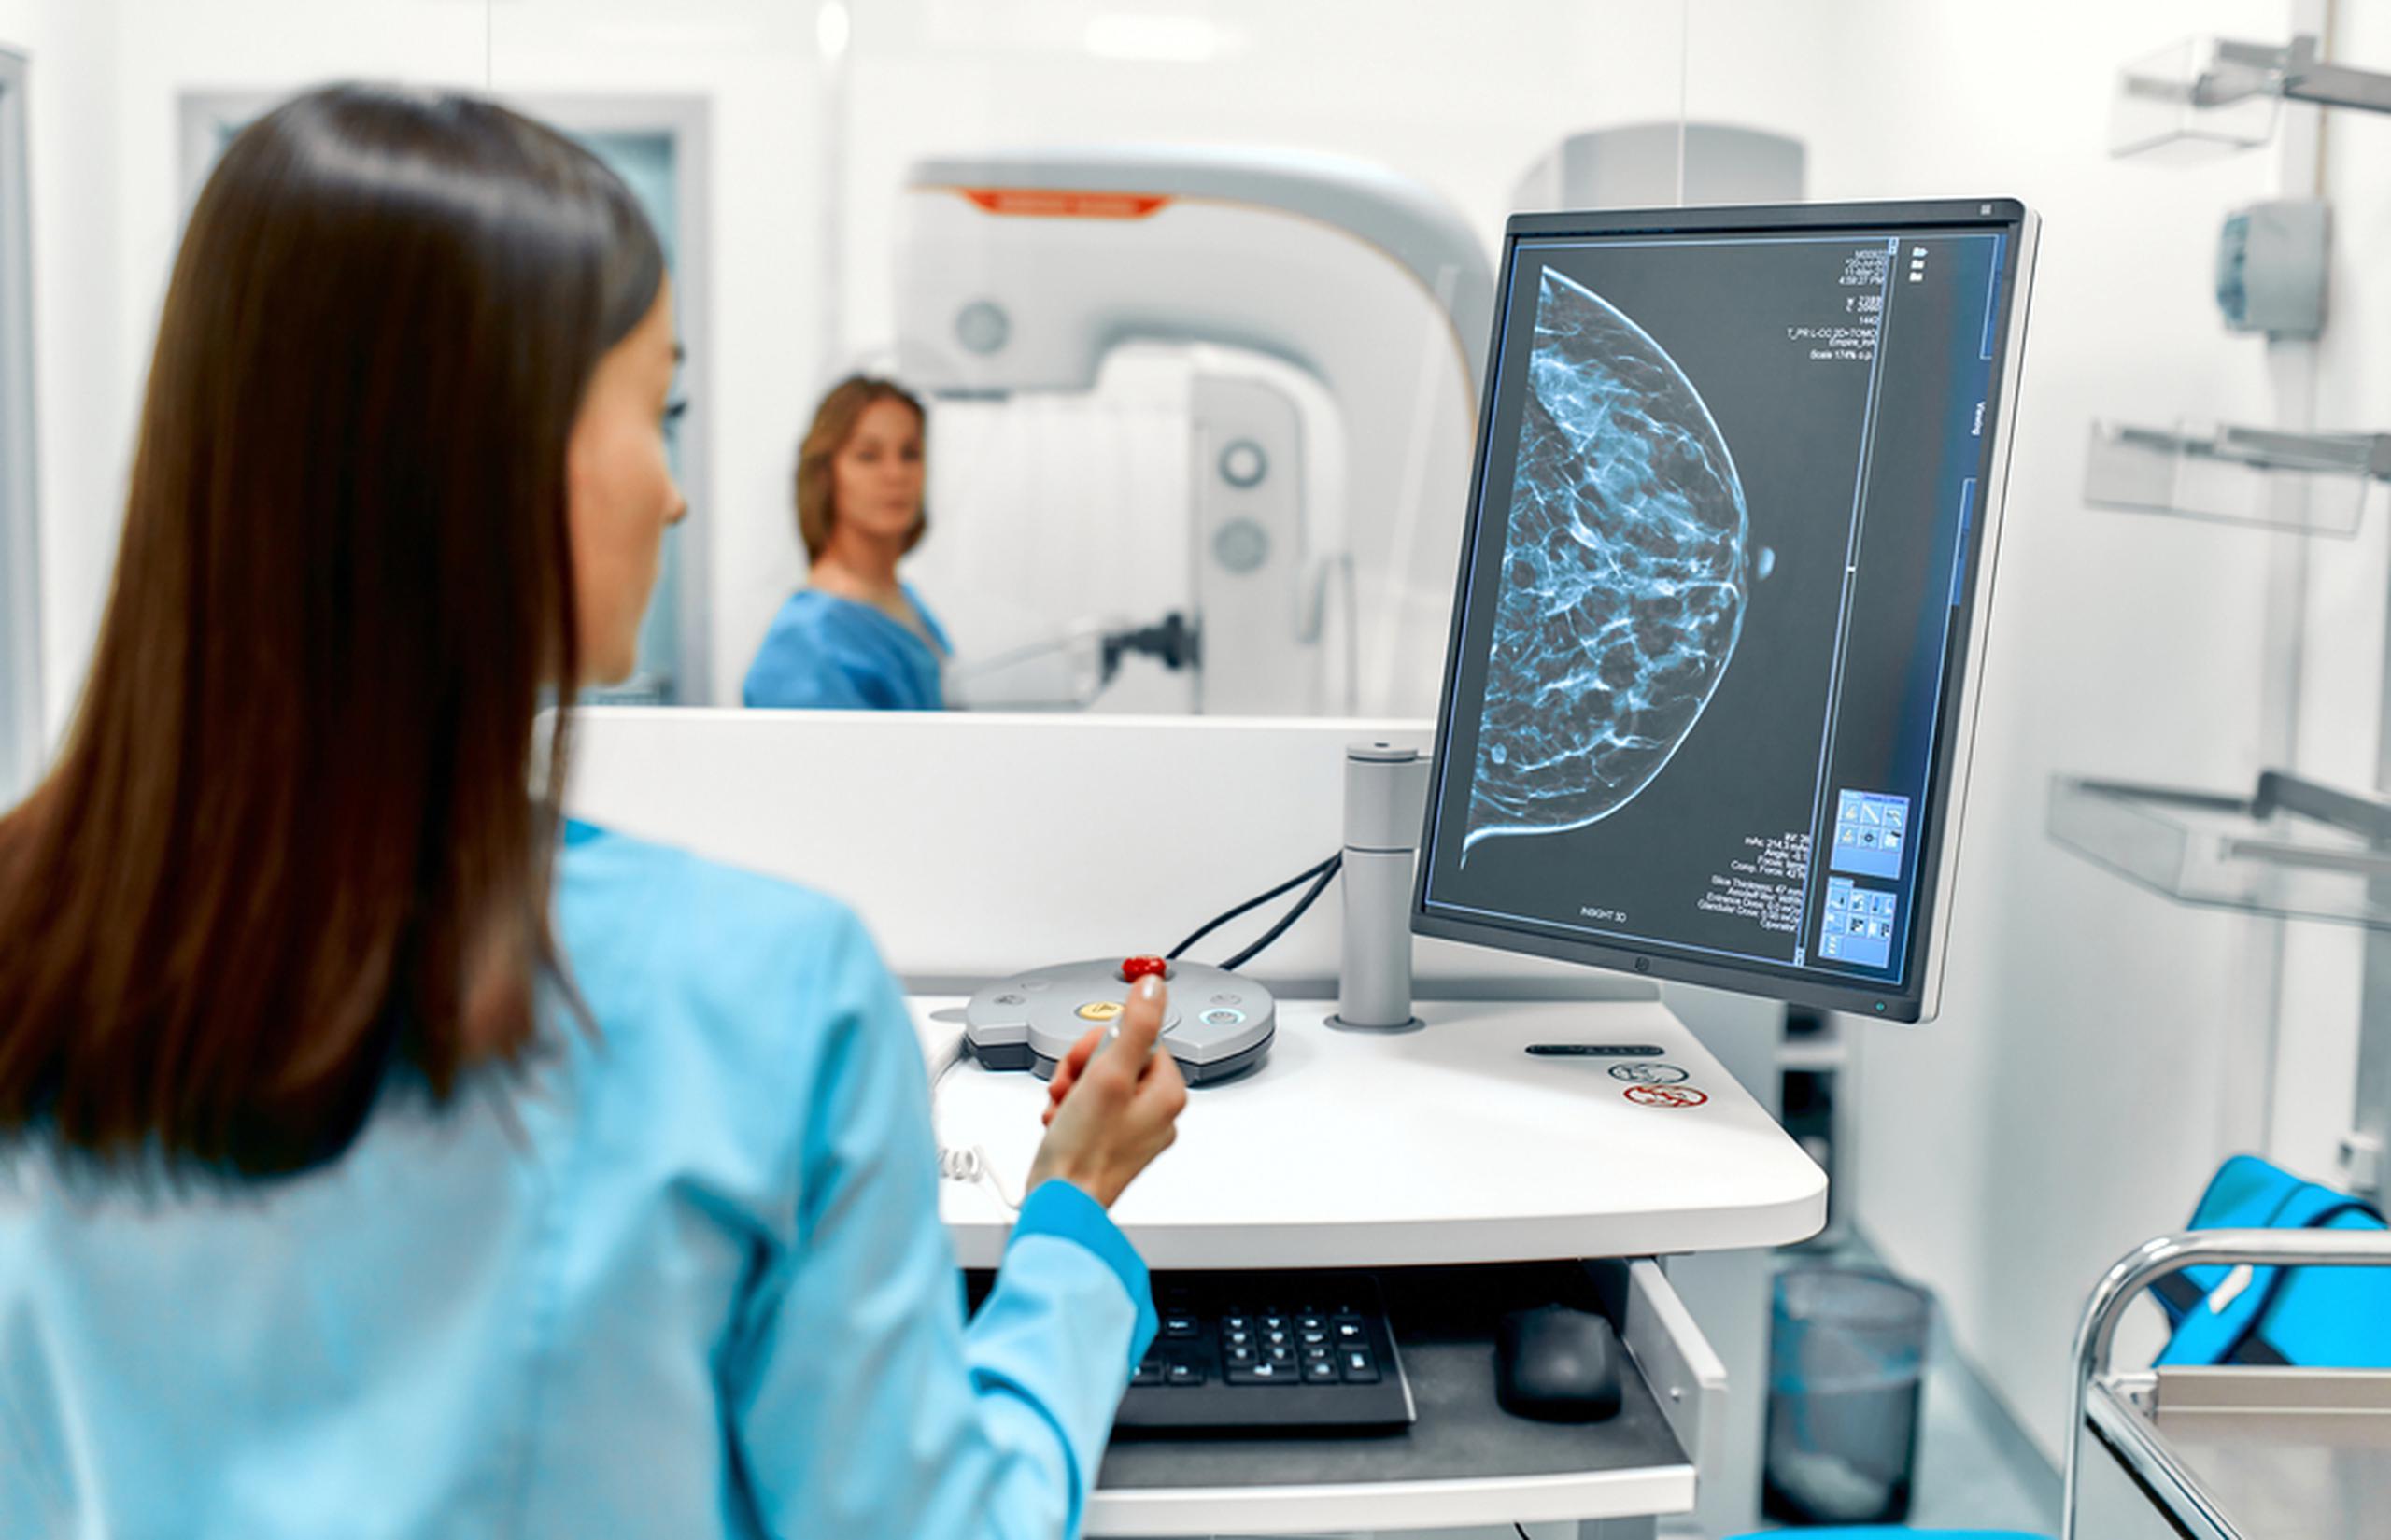 Estudios radiológicos especializados pueden ayudar en la detección temprana de pequeños cánceres del seno que podrían permanecer ocultos en los mamogramas convencionales.